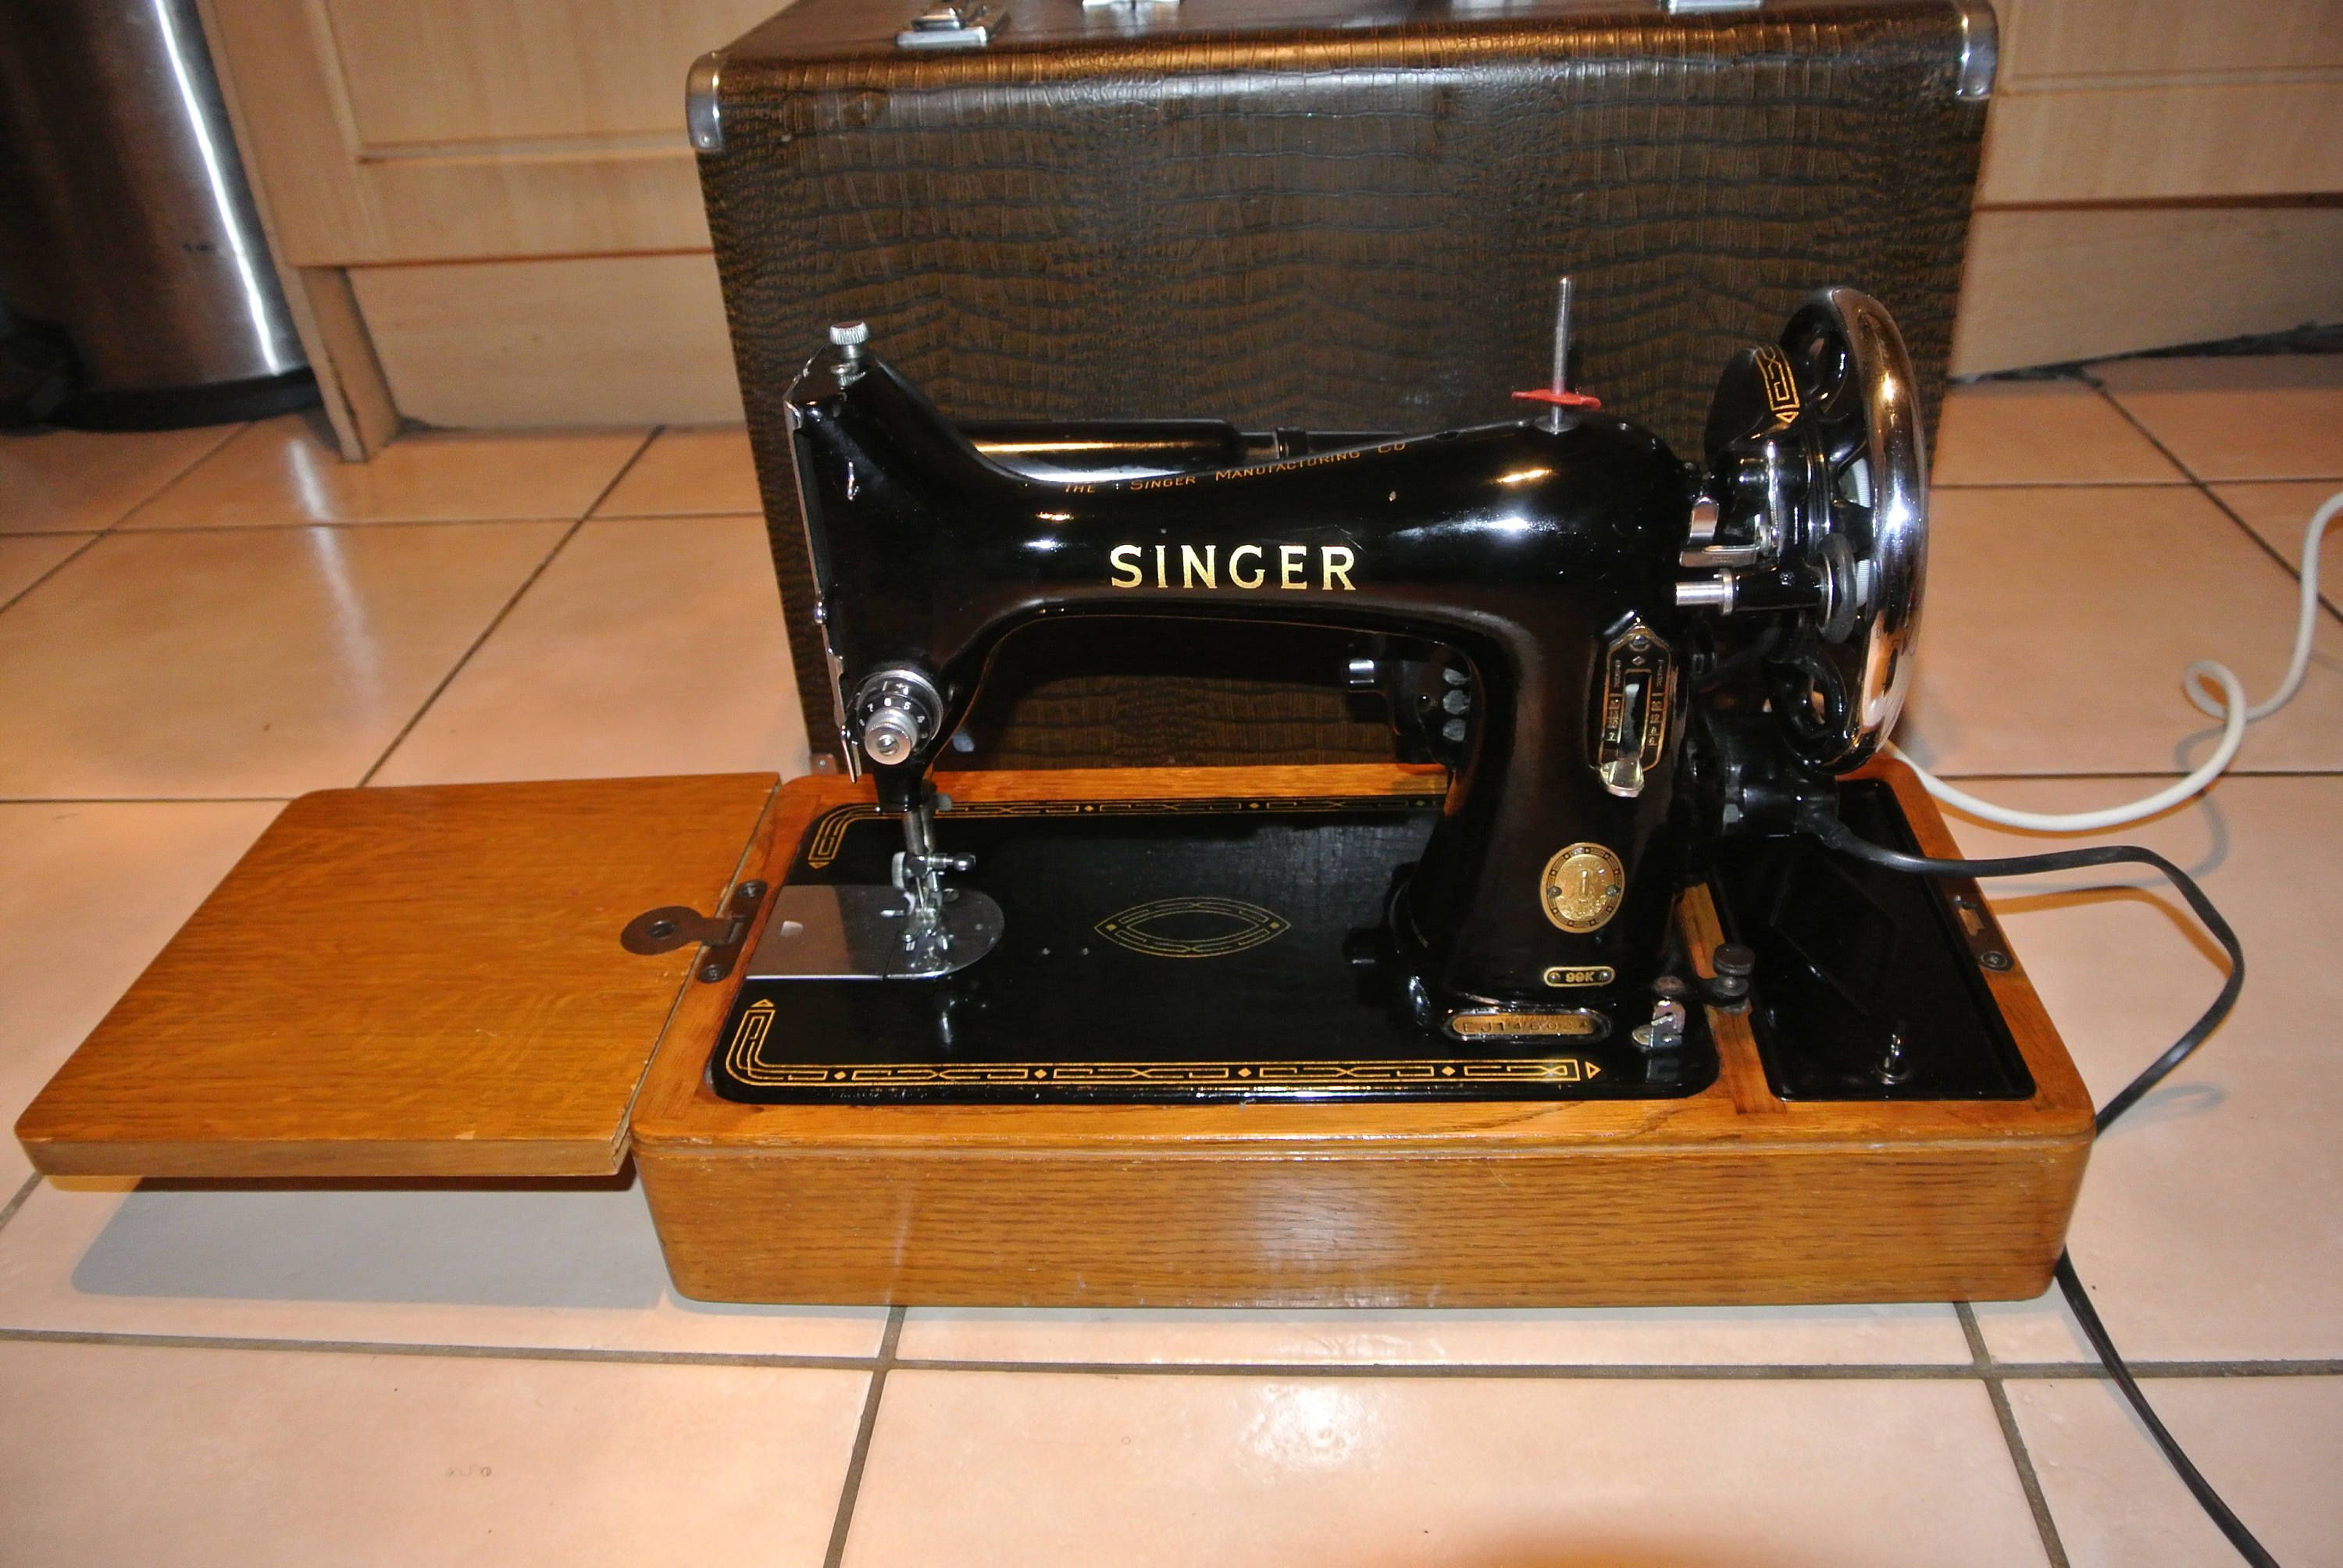 Singer Sewing Machine 7105 User Manual